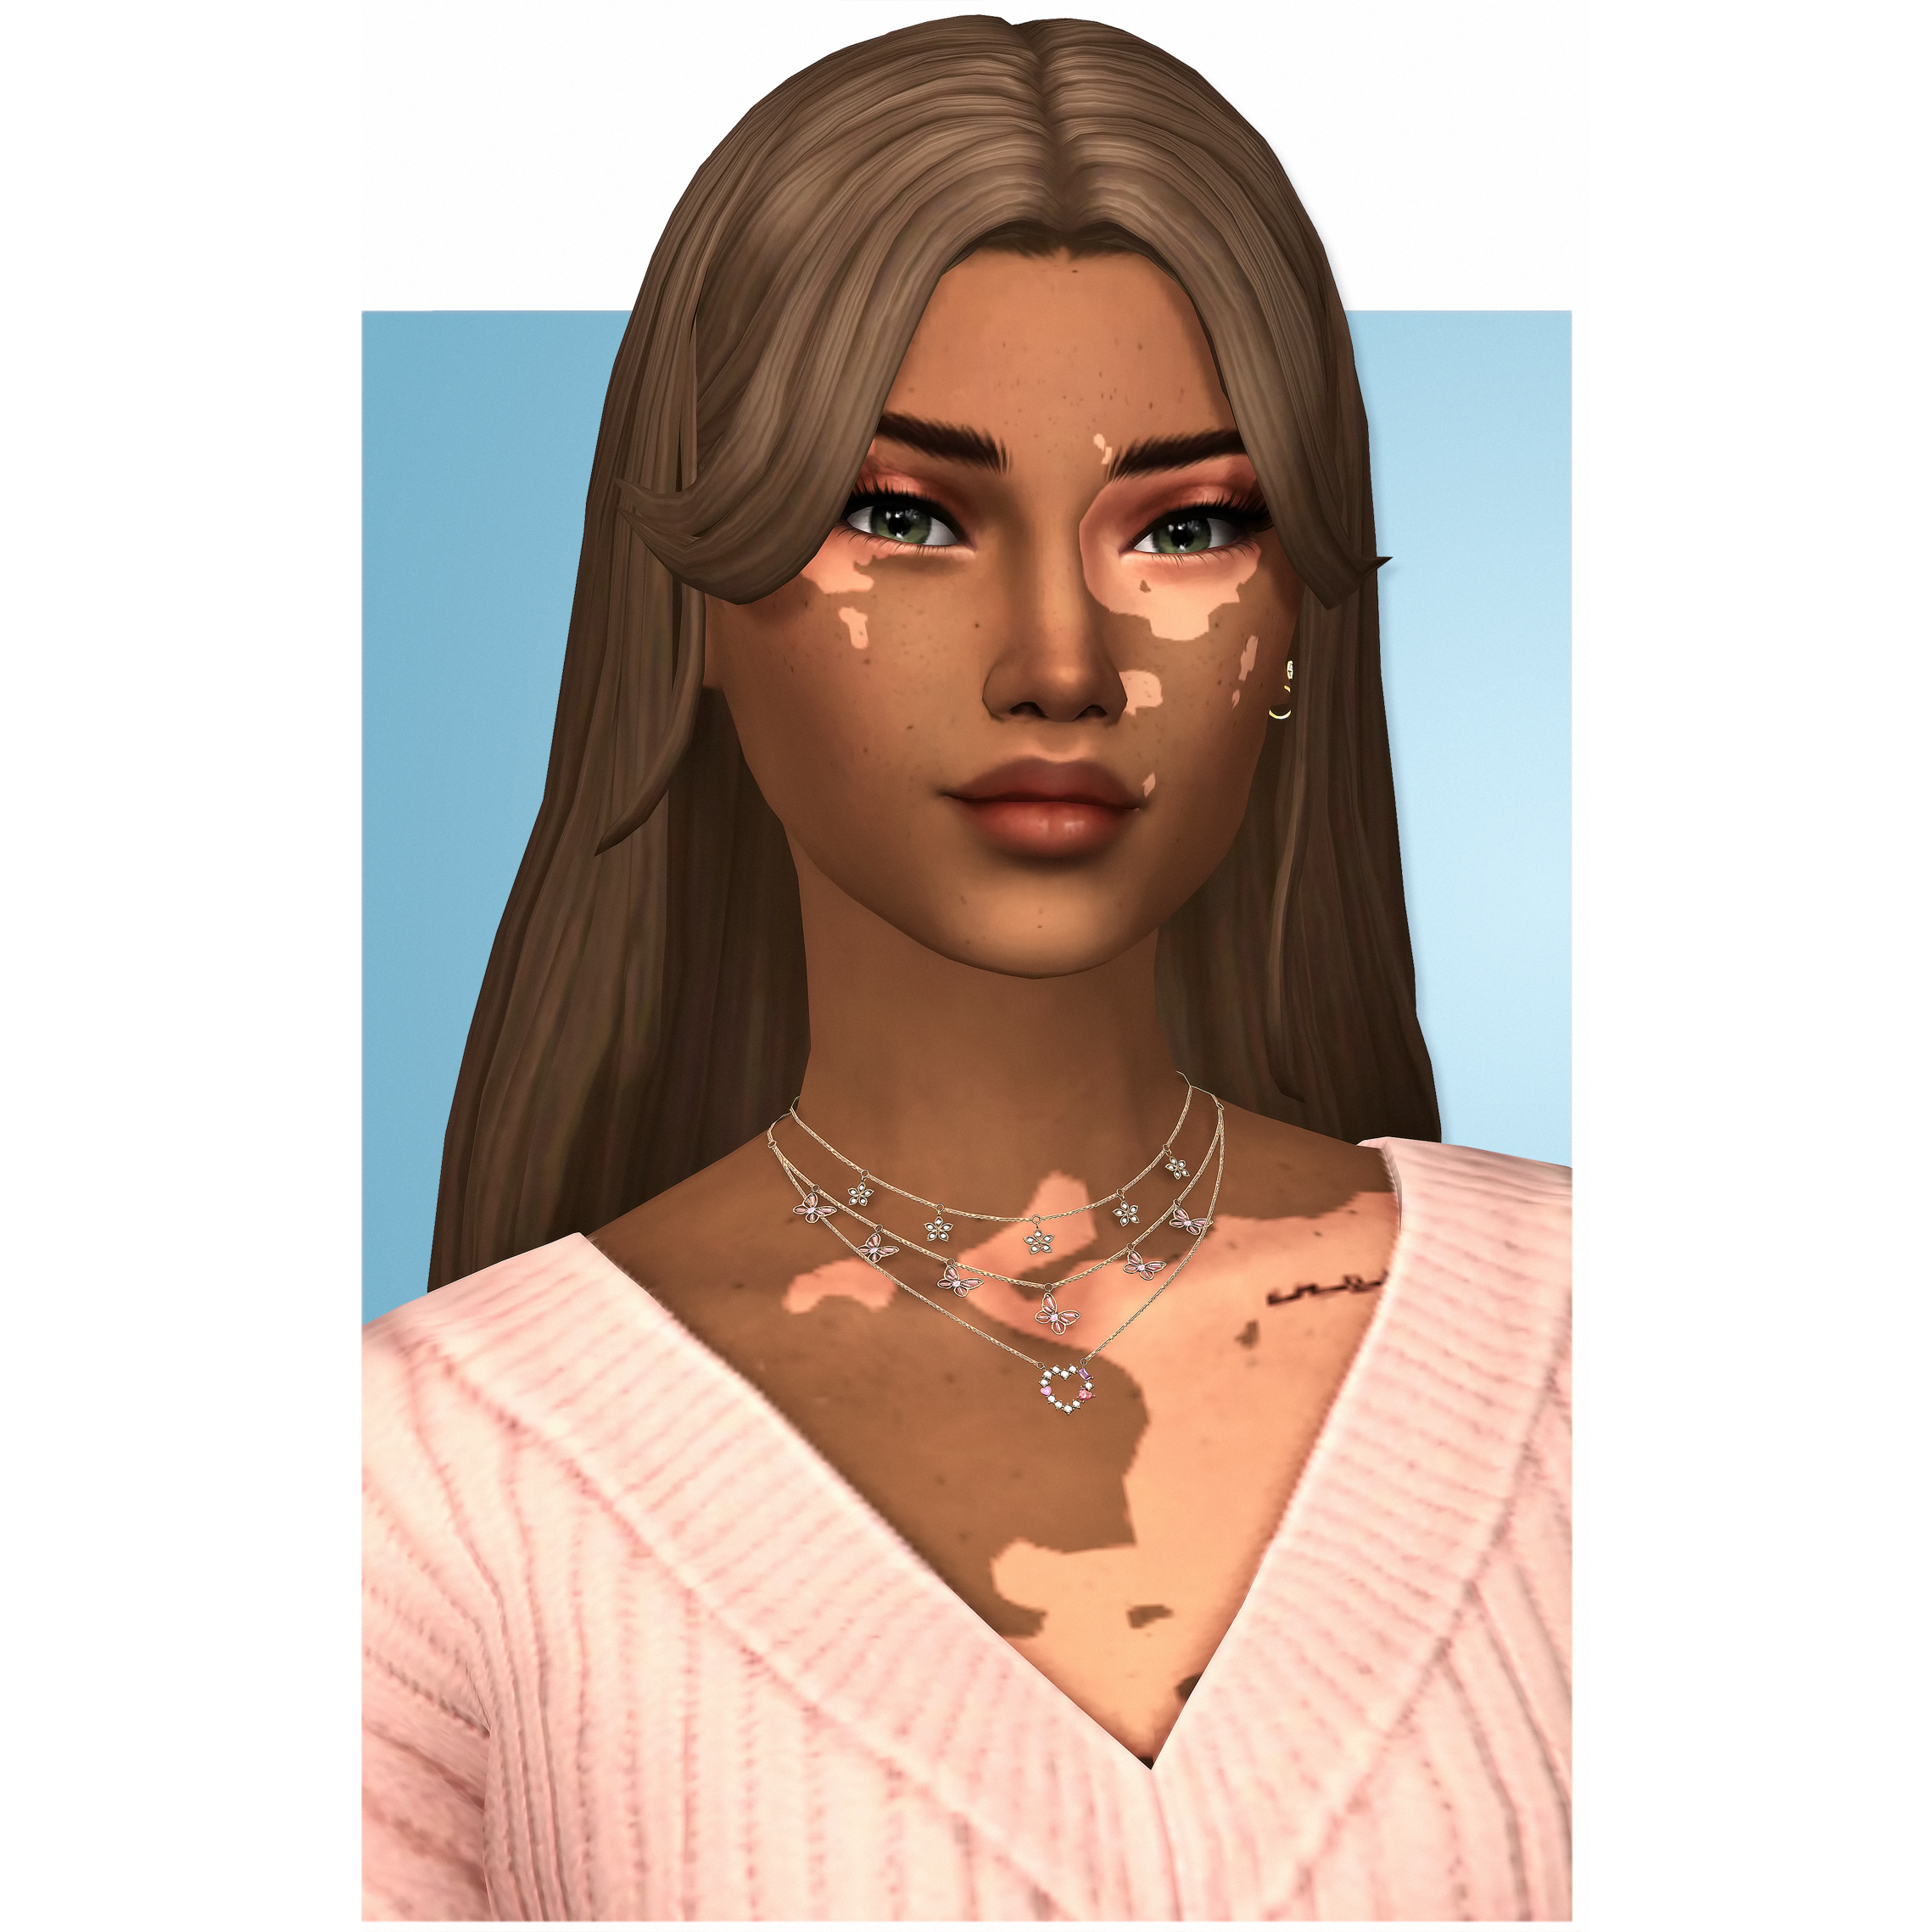 QICC - Mhysa Hair - The Sims 4 Create a Sim - CurseForge